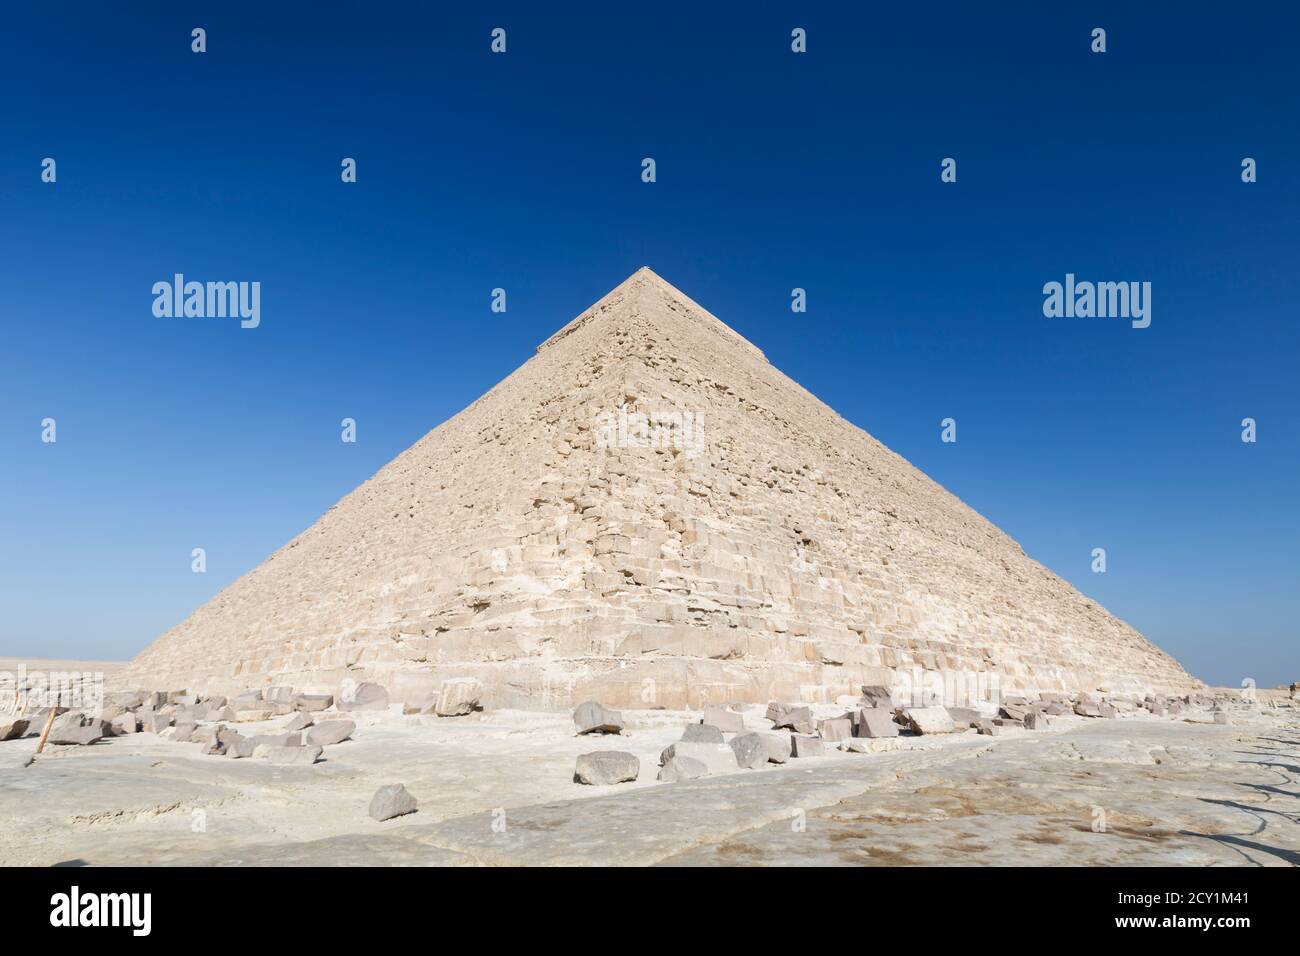 The pyramid of Khafre, Giza, Egypt Stock Photo